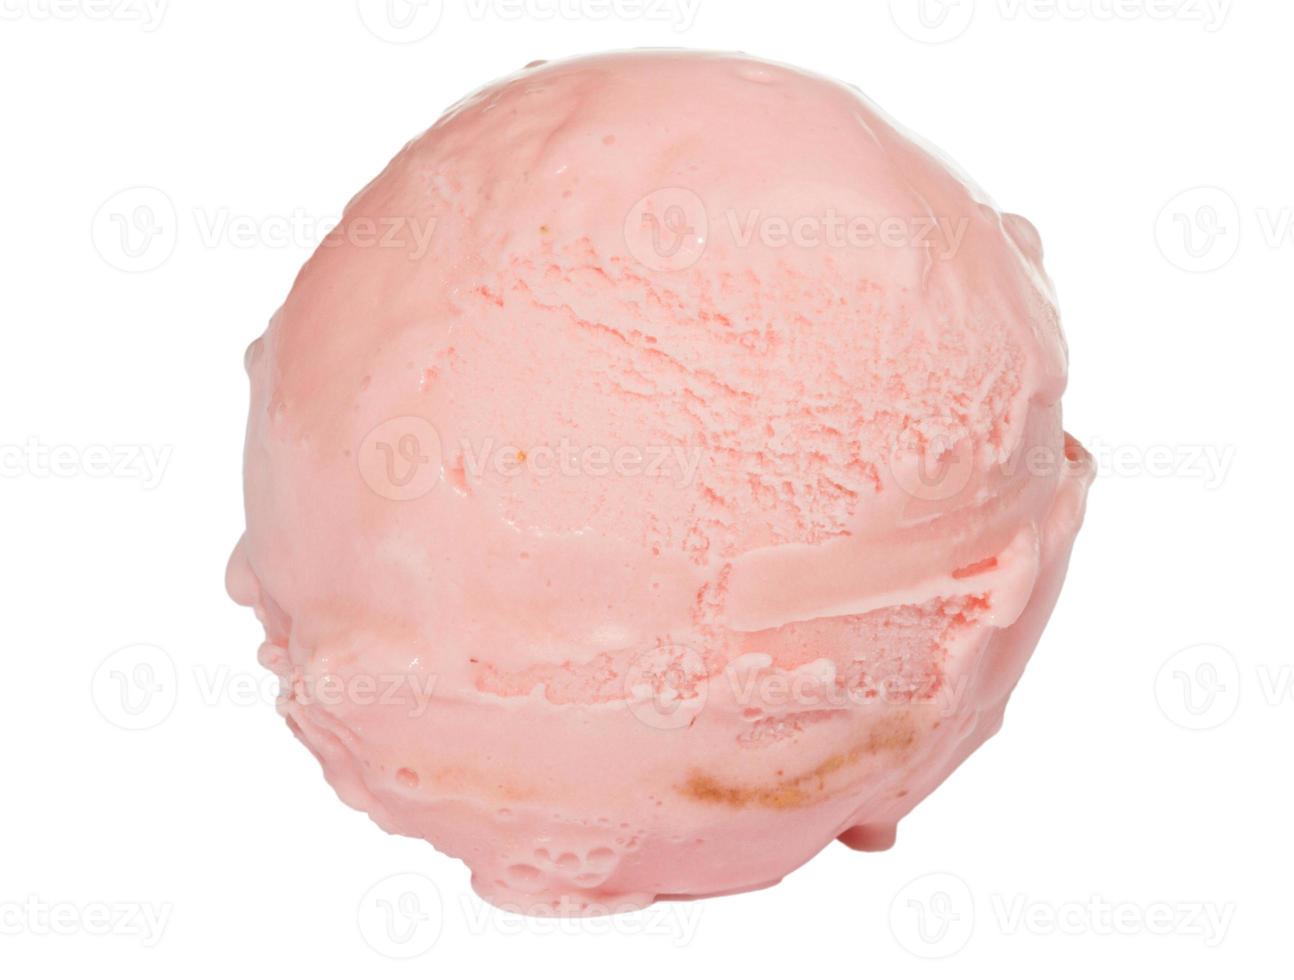 colher de sorvete de morango de cima no fundo branco foto